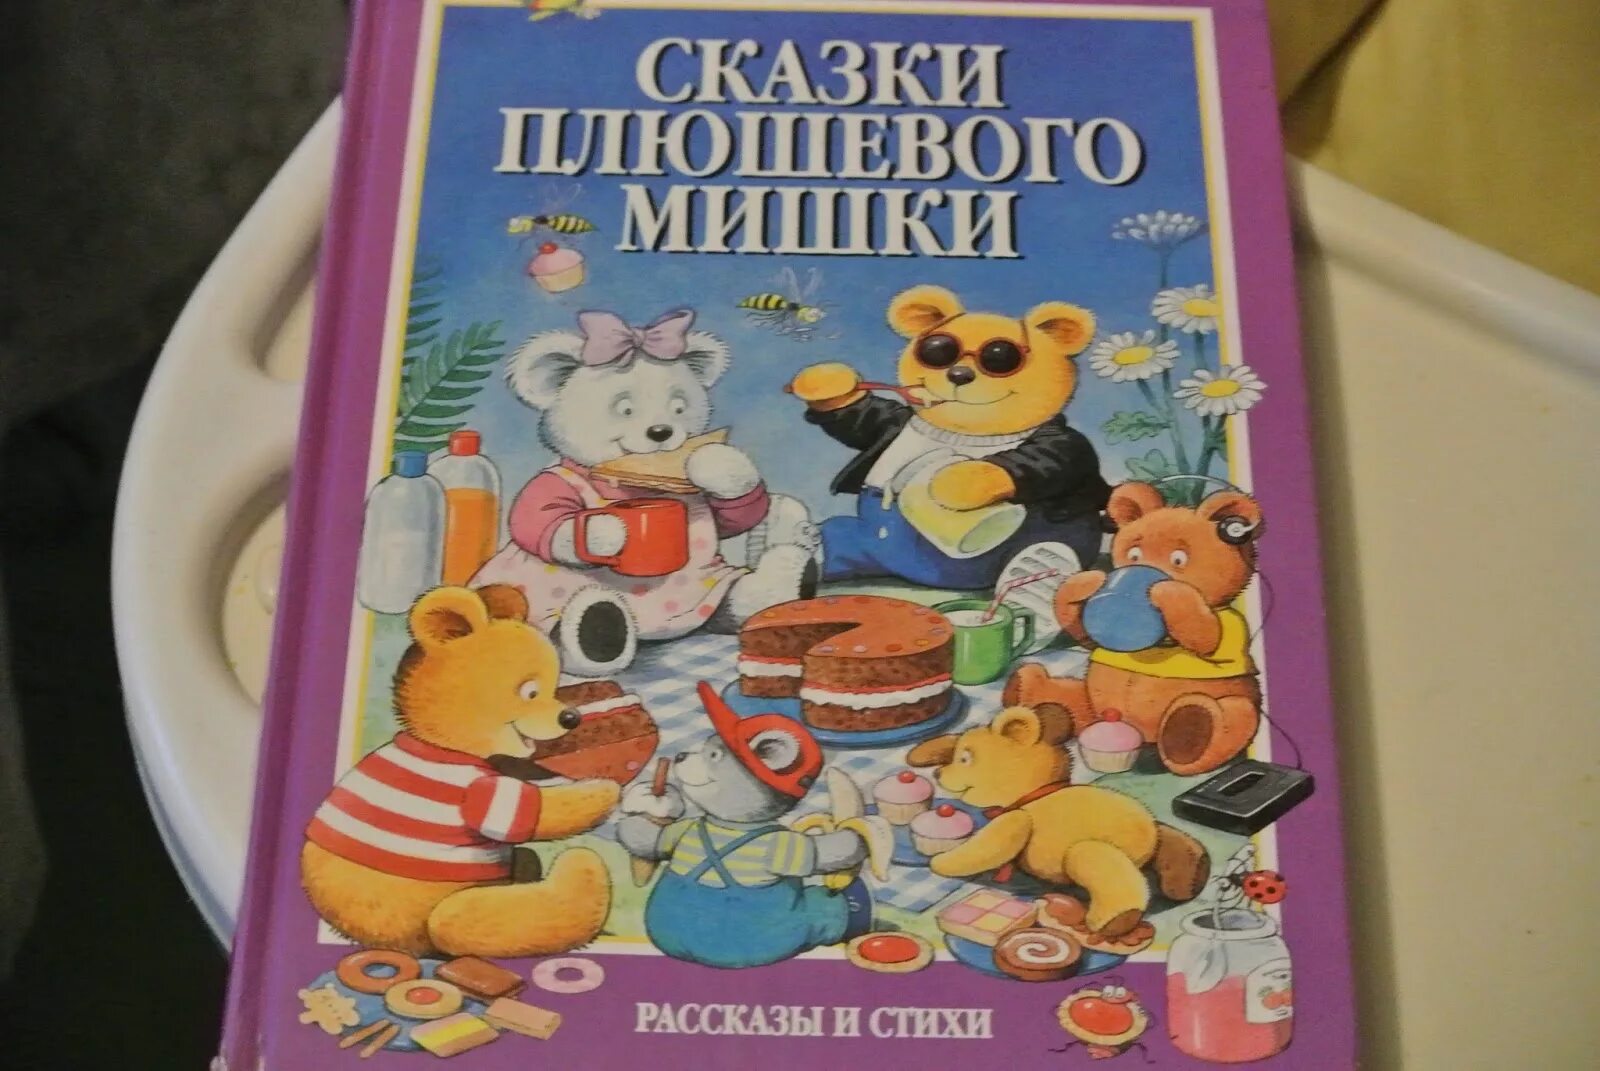 Купить книгу мишка. Сказки плюшевого мишки. Книжка про плюшевого медвежонка. Сказки плюшевого мишки книга. Детские книжки с мишкой.